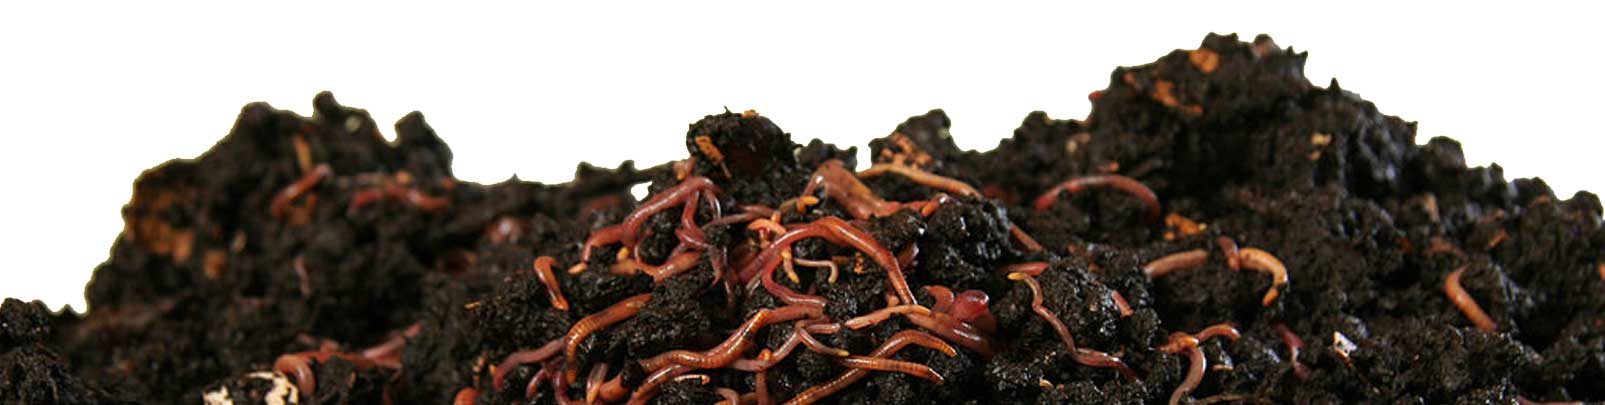 Kompost mit Würmern